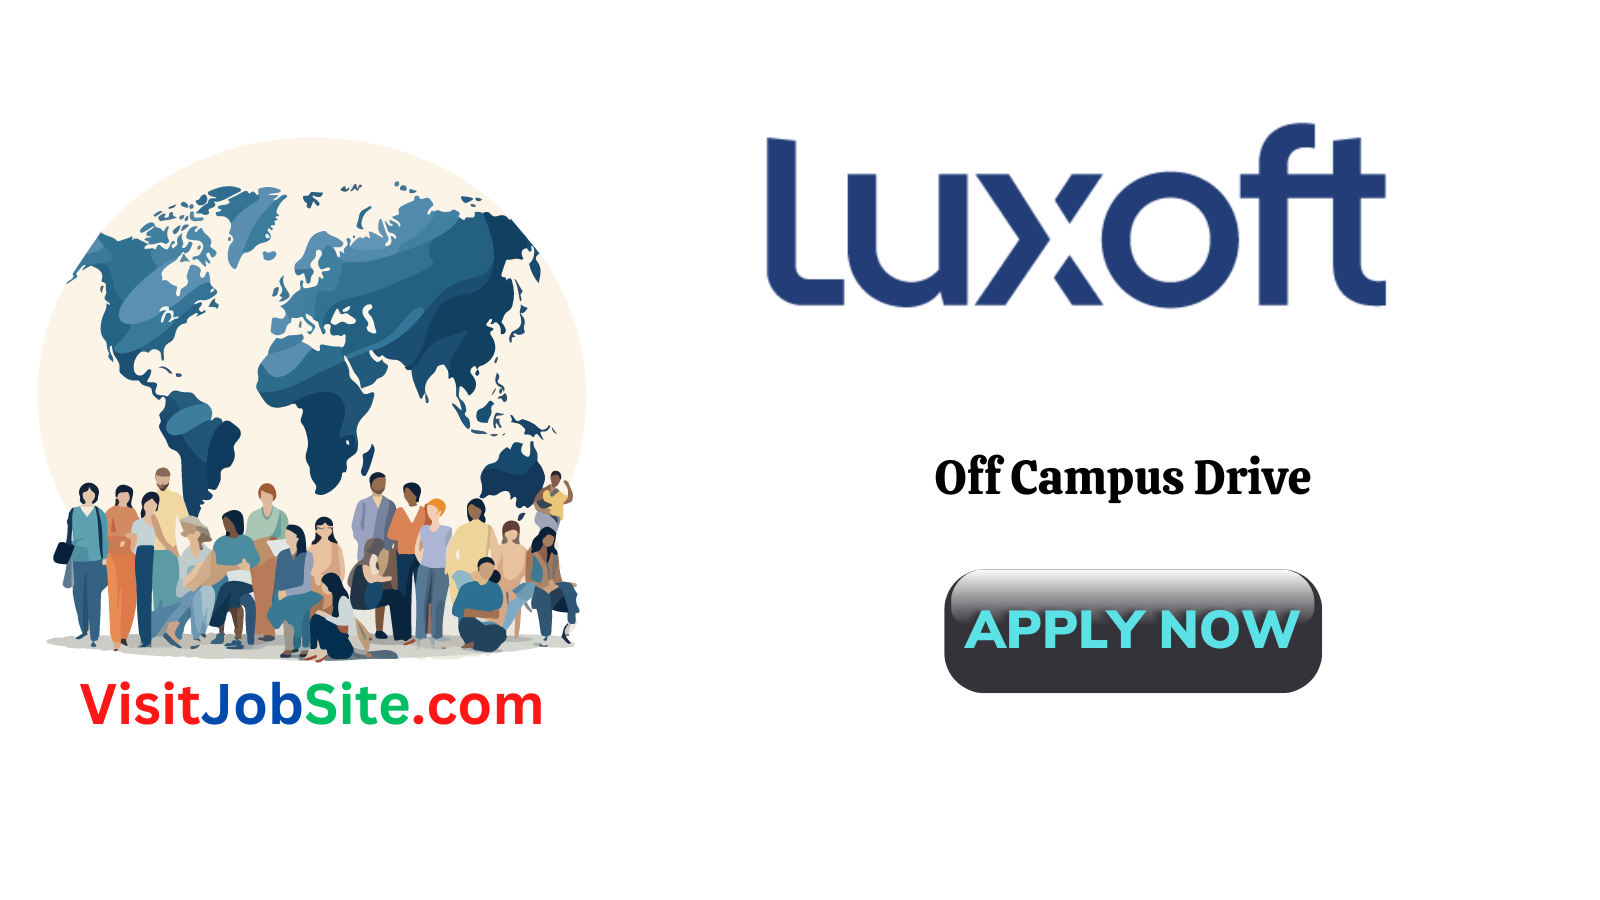 Luxoft Off Campus Drive